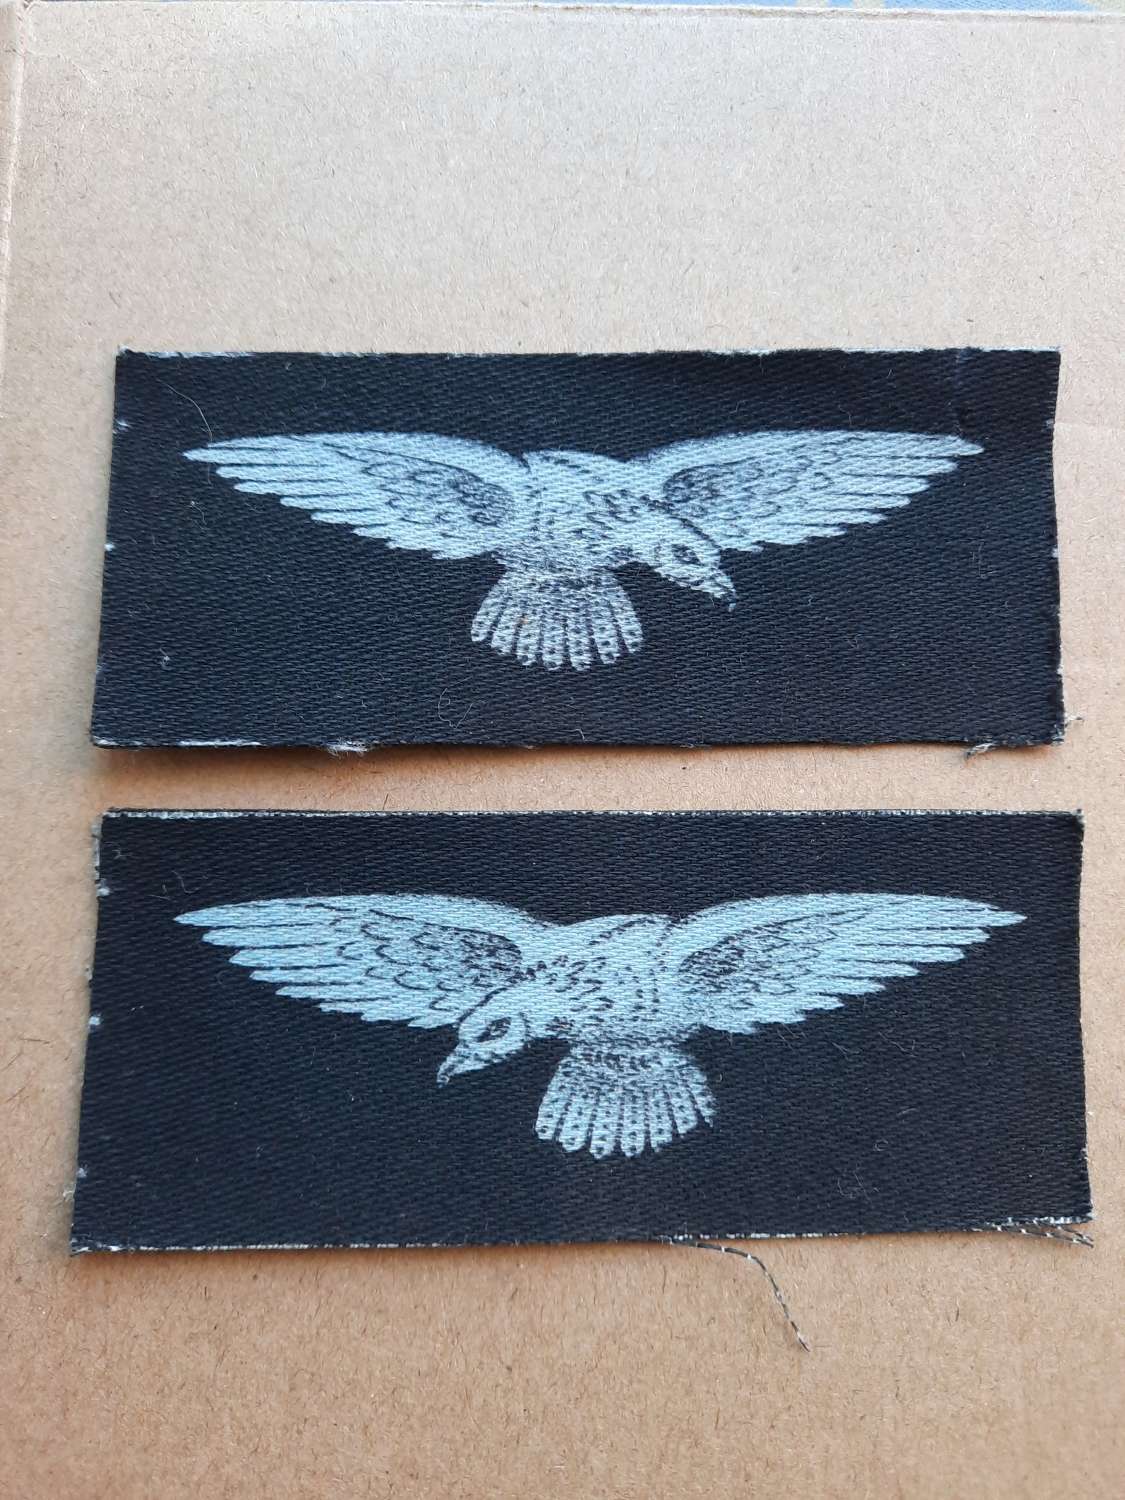 Pair of Printed RAF Shoulder Eagles